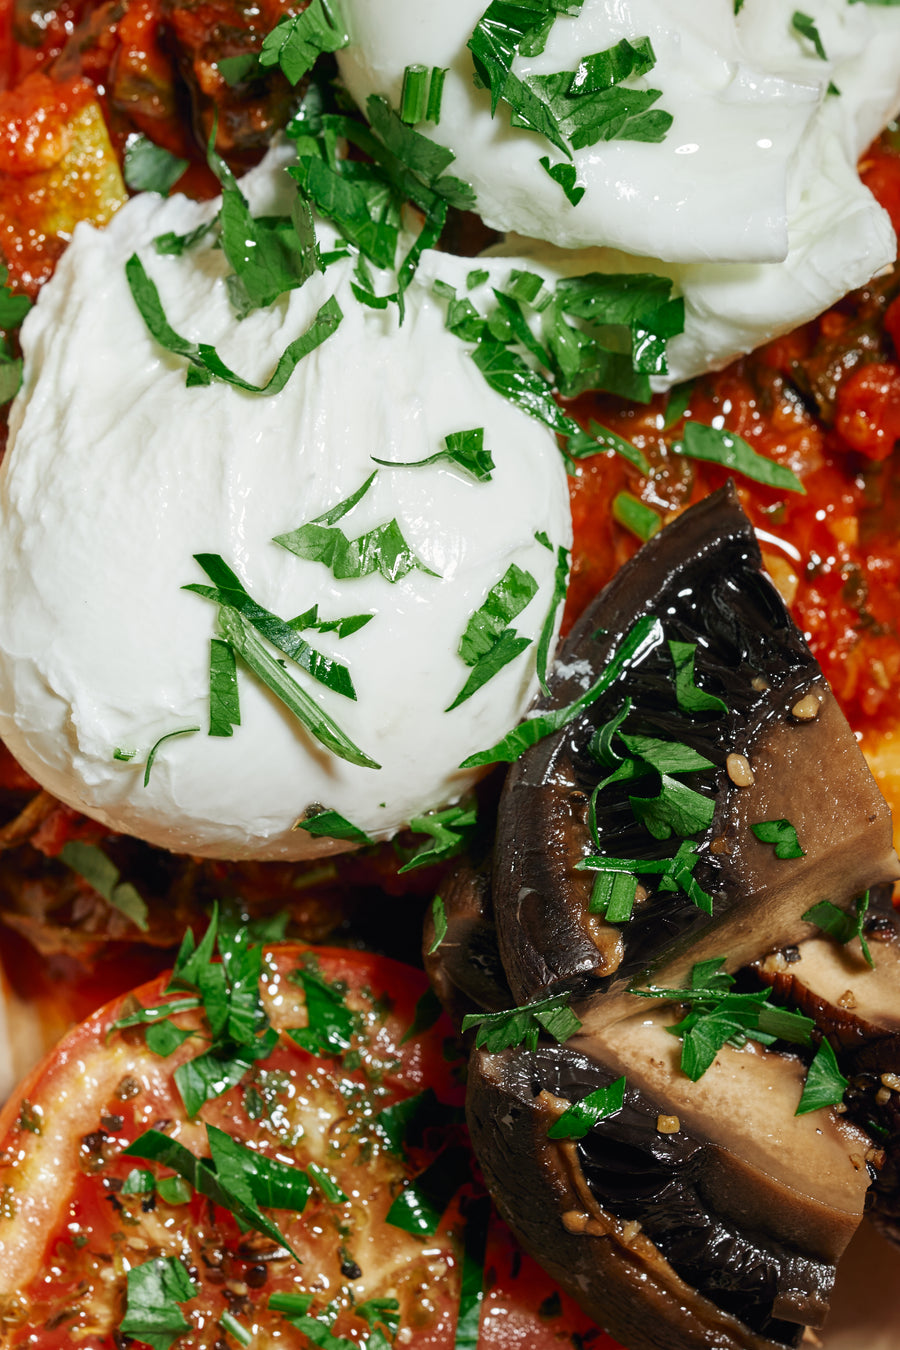 摩洛哥風格的荷包蛋低脂番茄醬配烤波托貝羅蘑菇、菠菜和 翠肉瓜